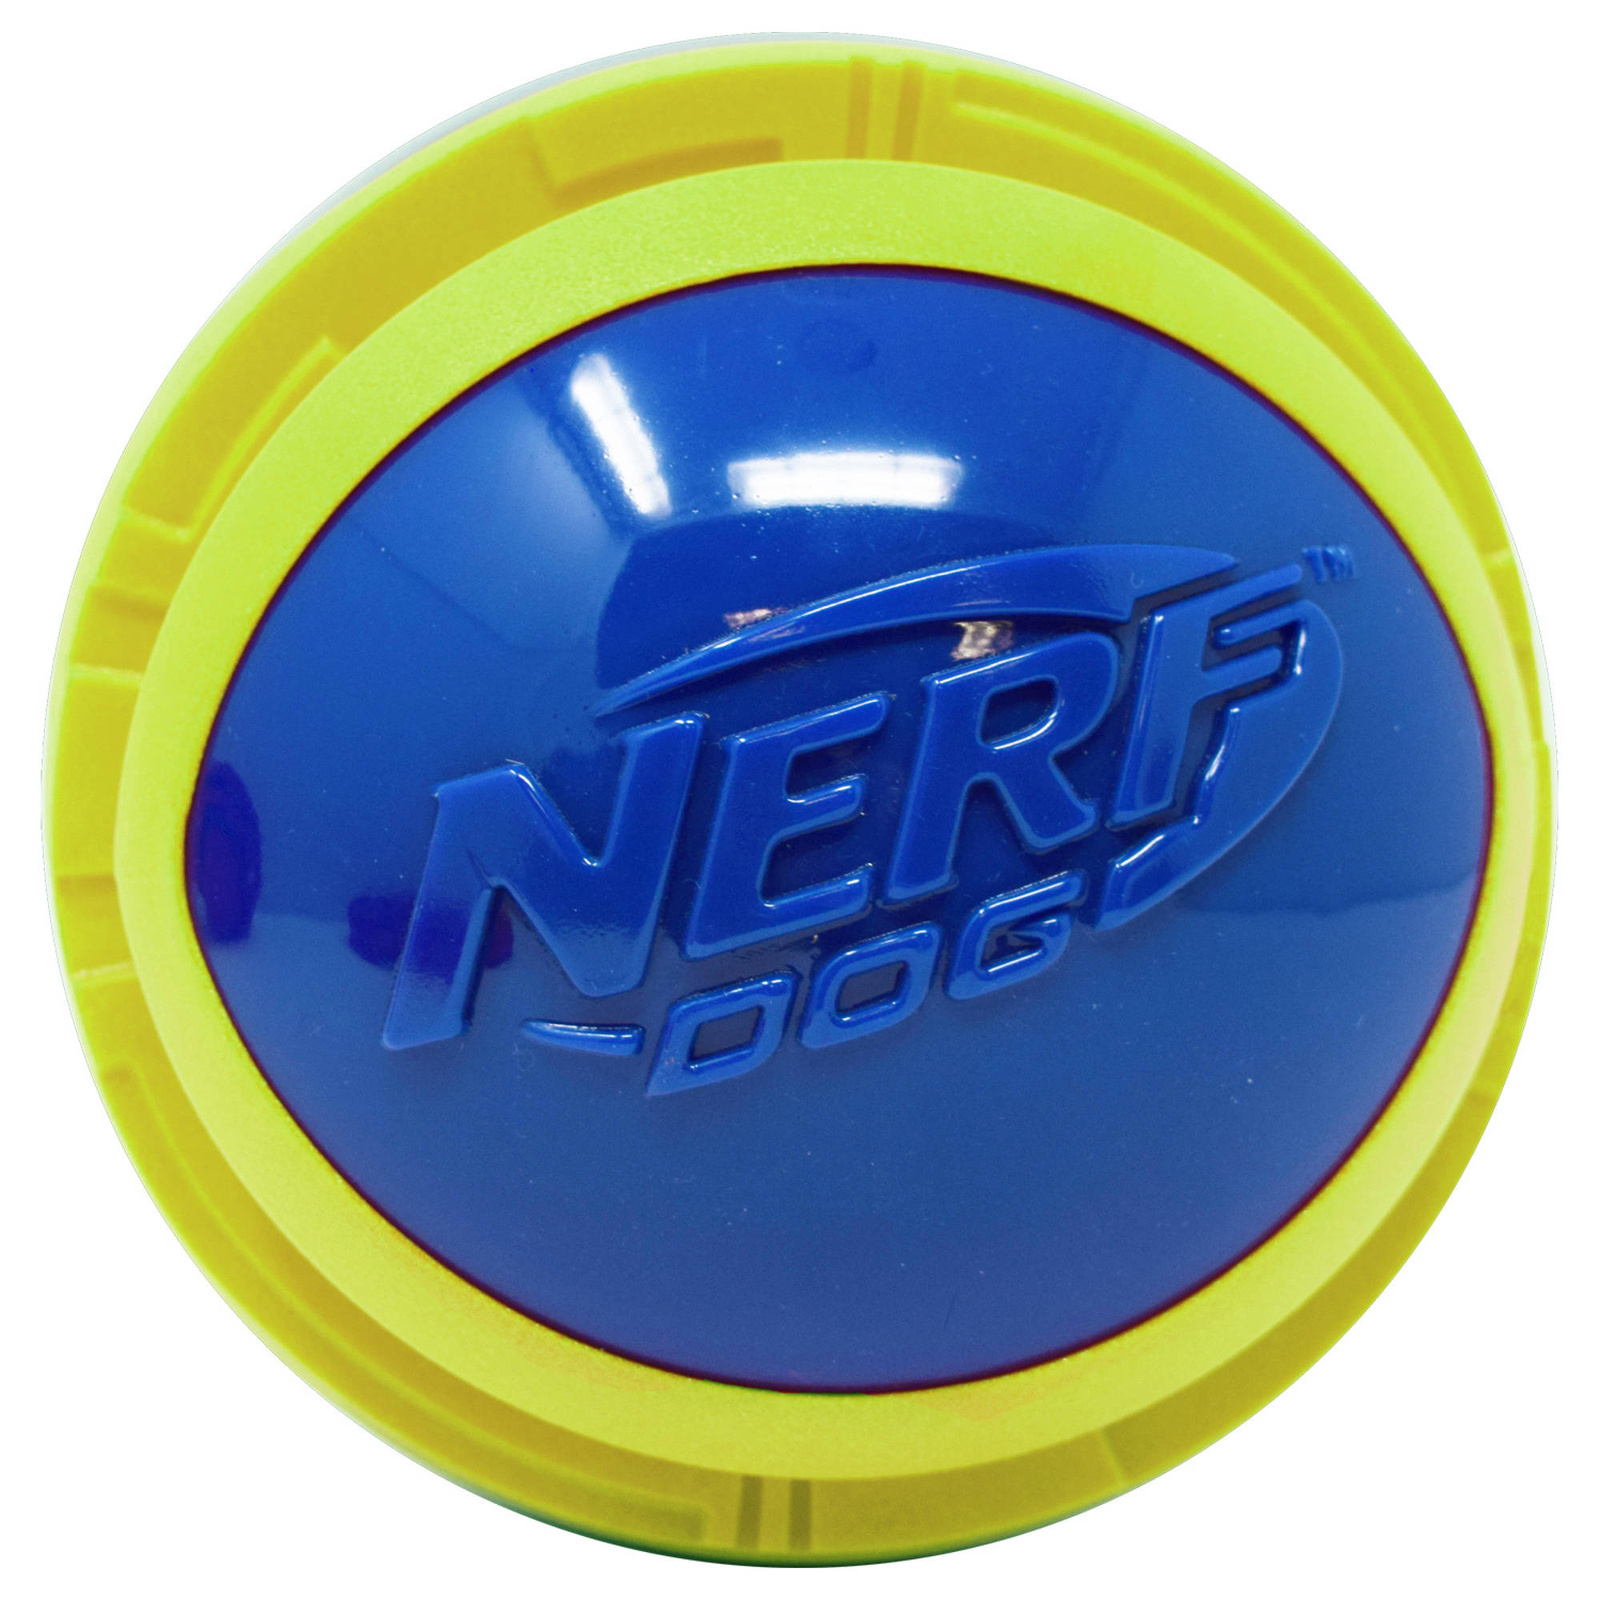 Nerf Nerf мяч из вспененной резины и термопластичной резины,14 см (серия Мегатон), (синий/зеленый) (390 г) nerf nerf мяч для регби из термопластичной резины 18 см серия мегатон синий оранжевый 254 г